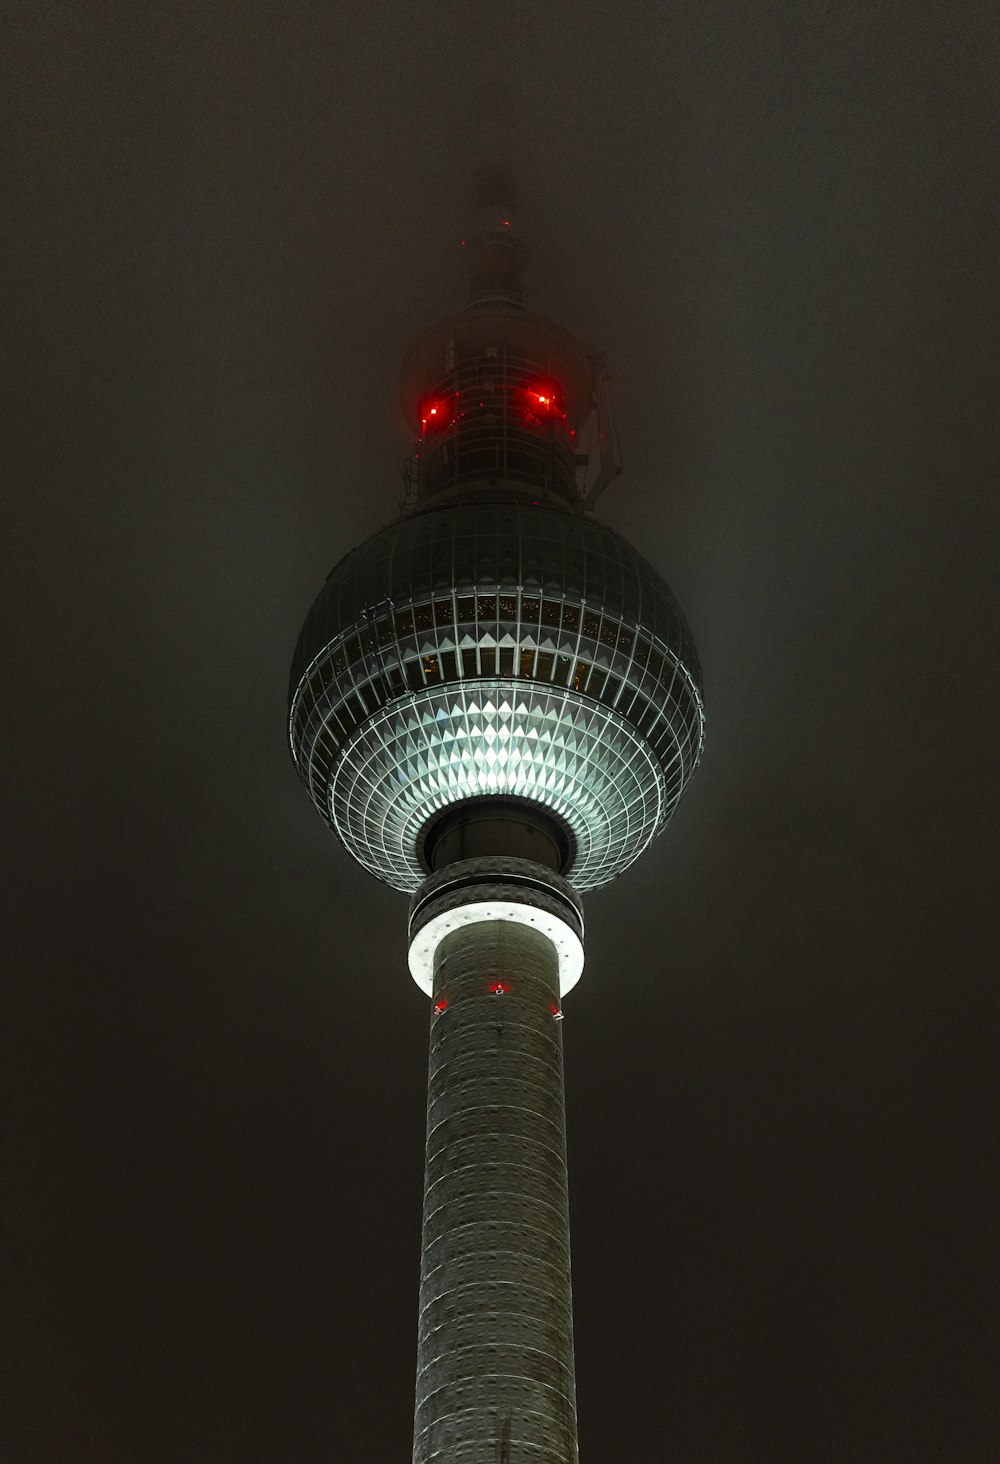 ein hoher Turm mit einem roten Licht auf der Spitze